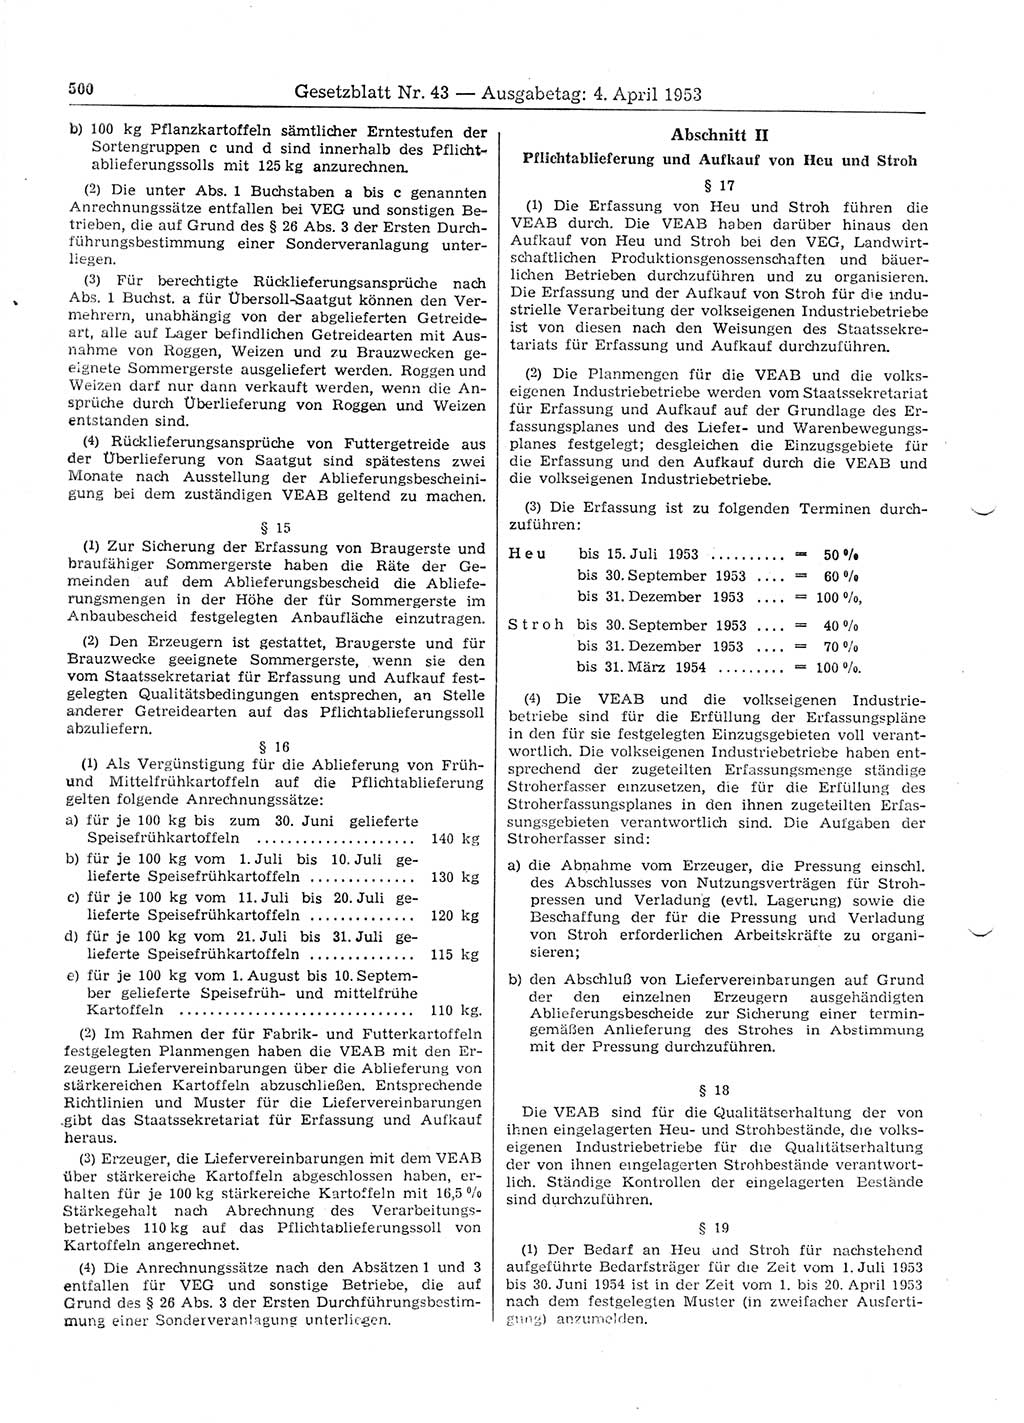 Gesetzblatt (GBl.) der Deutschen Demokratischen Republik (DDR) 1953, Seite 500 (GBl. DDR 1953, S. 500)